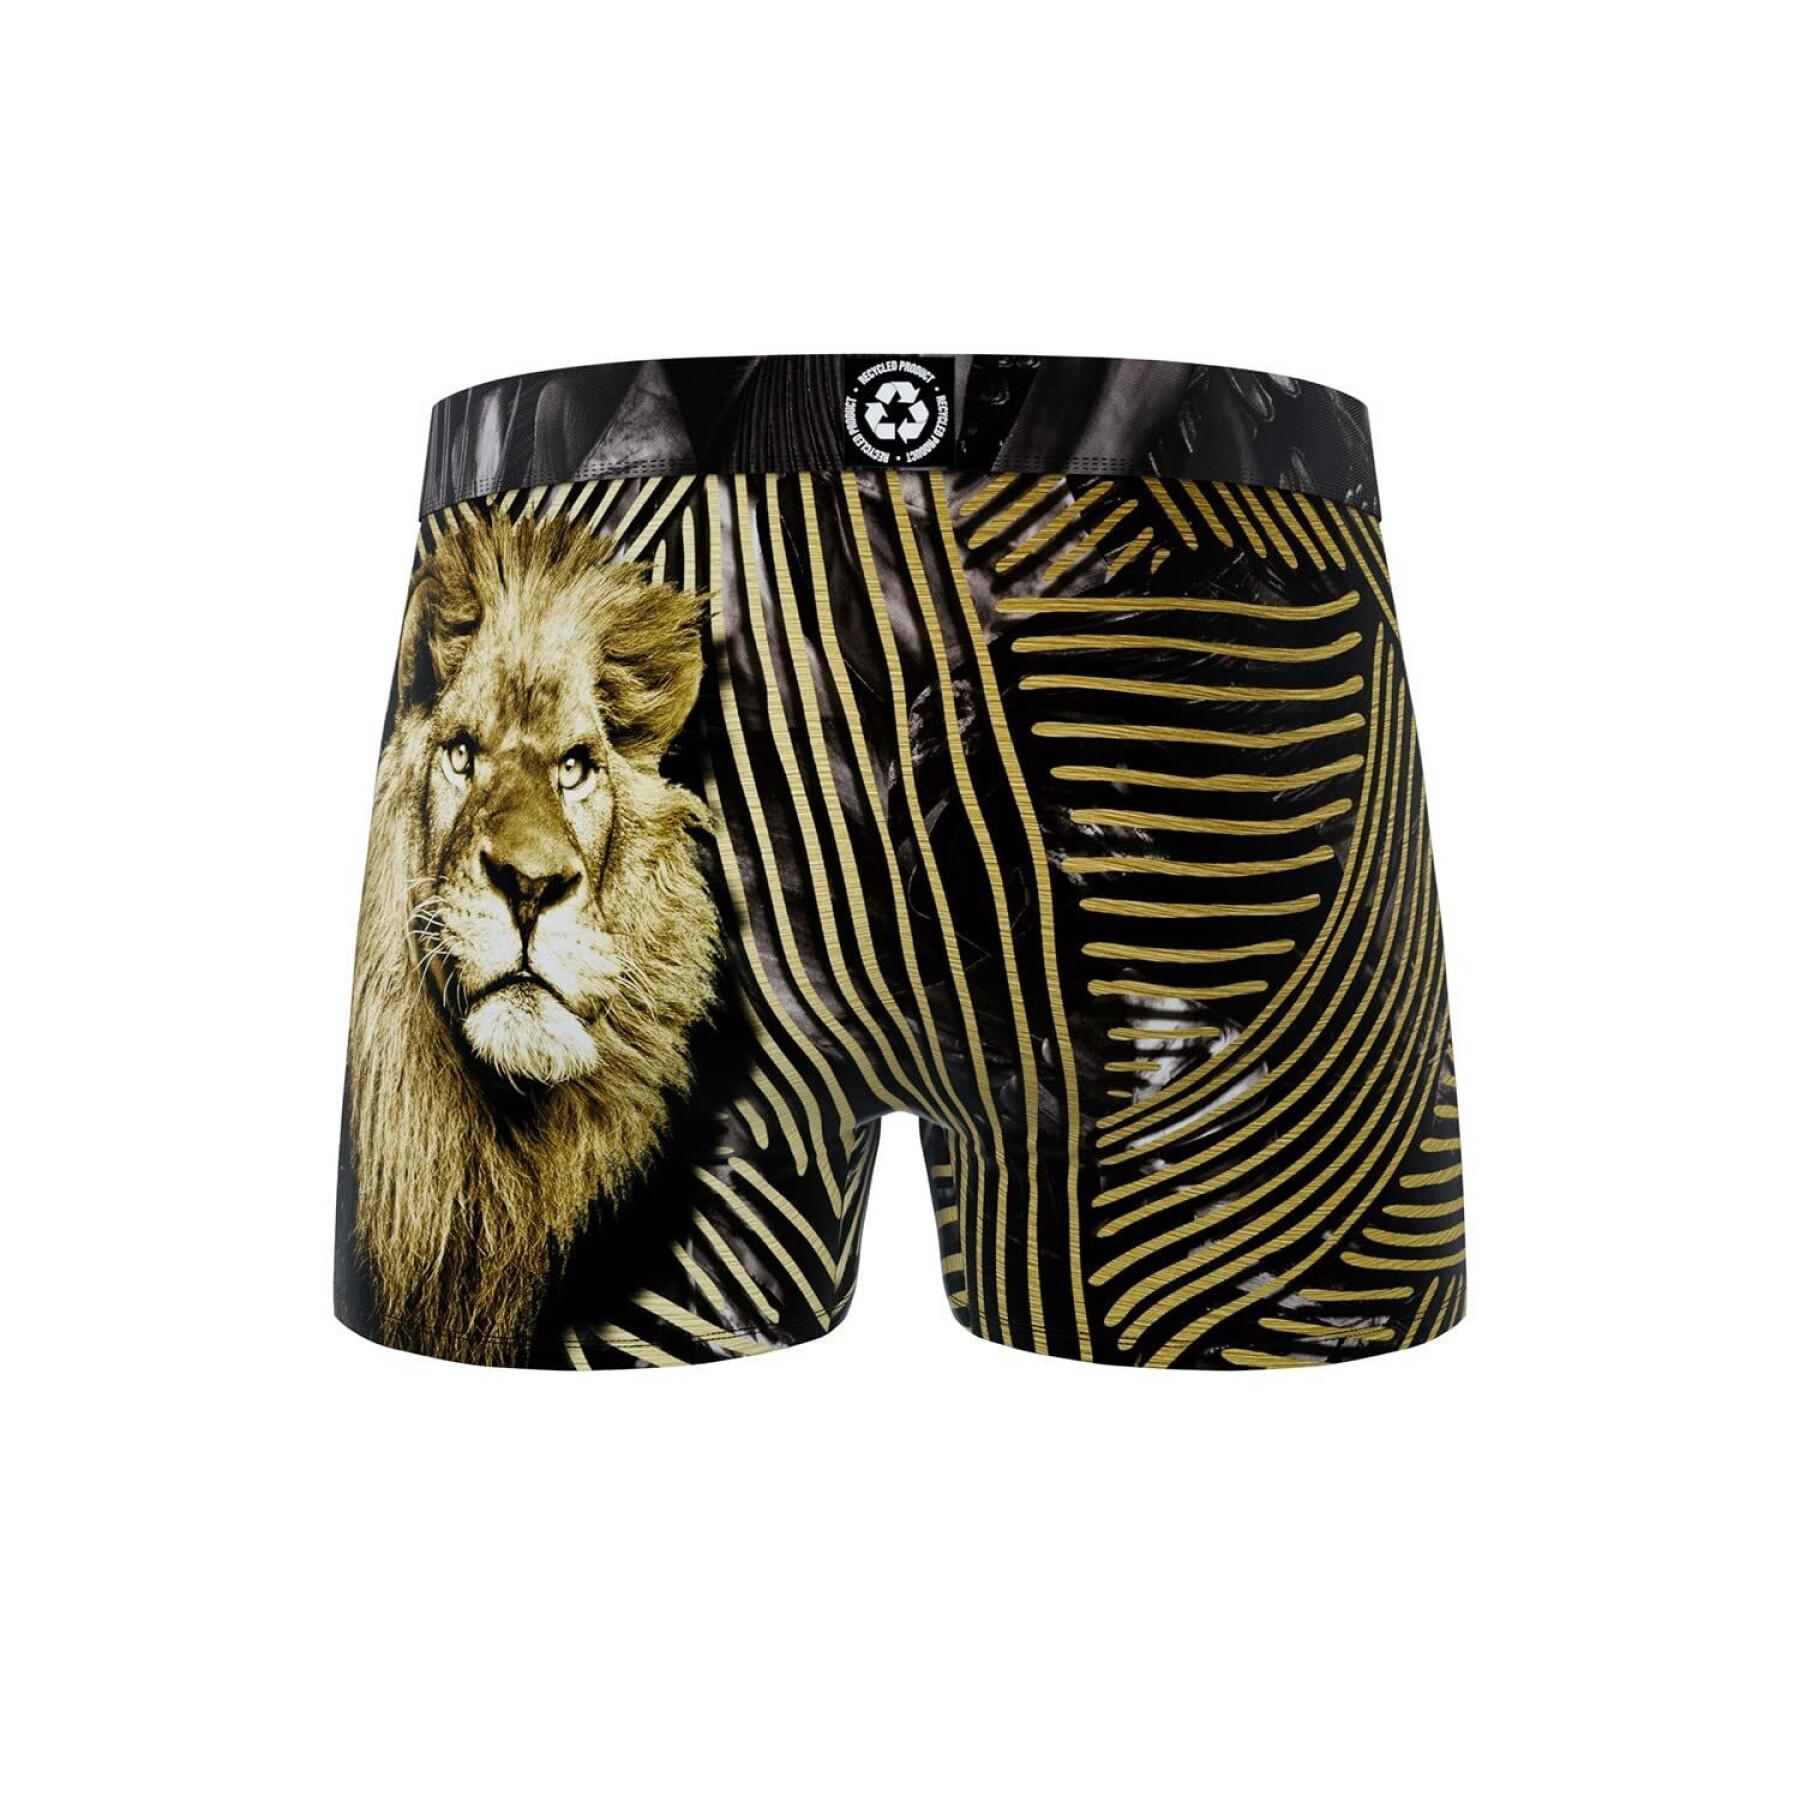 Boxershorts aus recyceltem Polyester mit Aufdruck wilde Tiere Löwe Kind Freegun